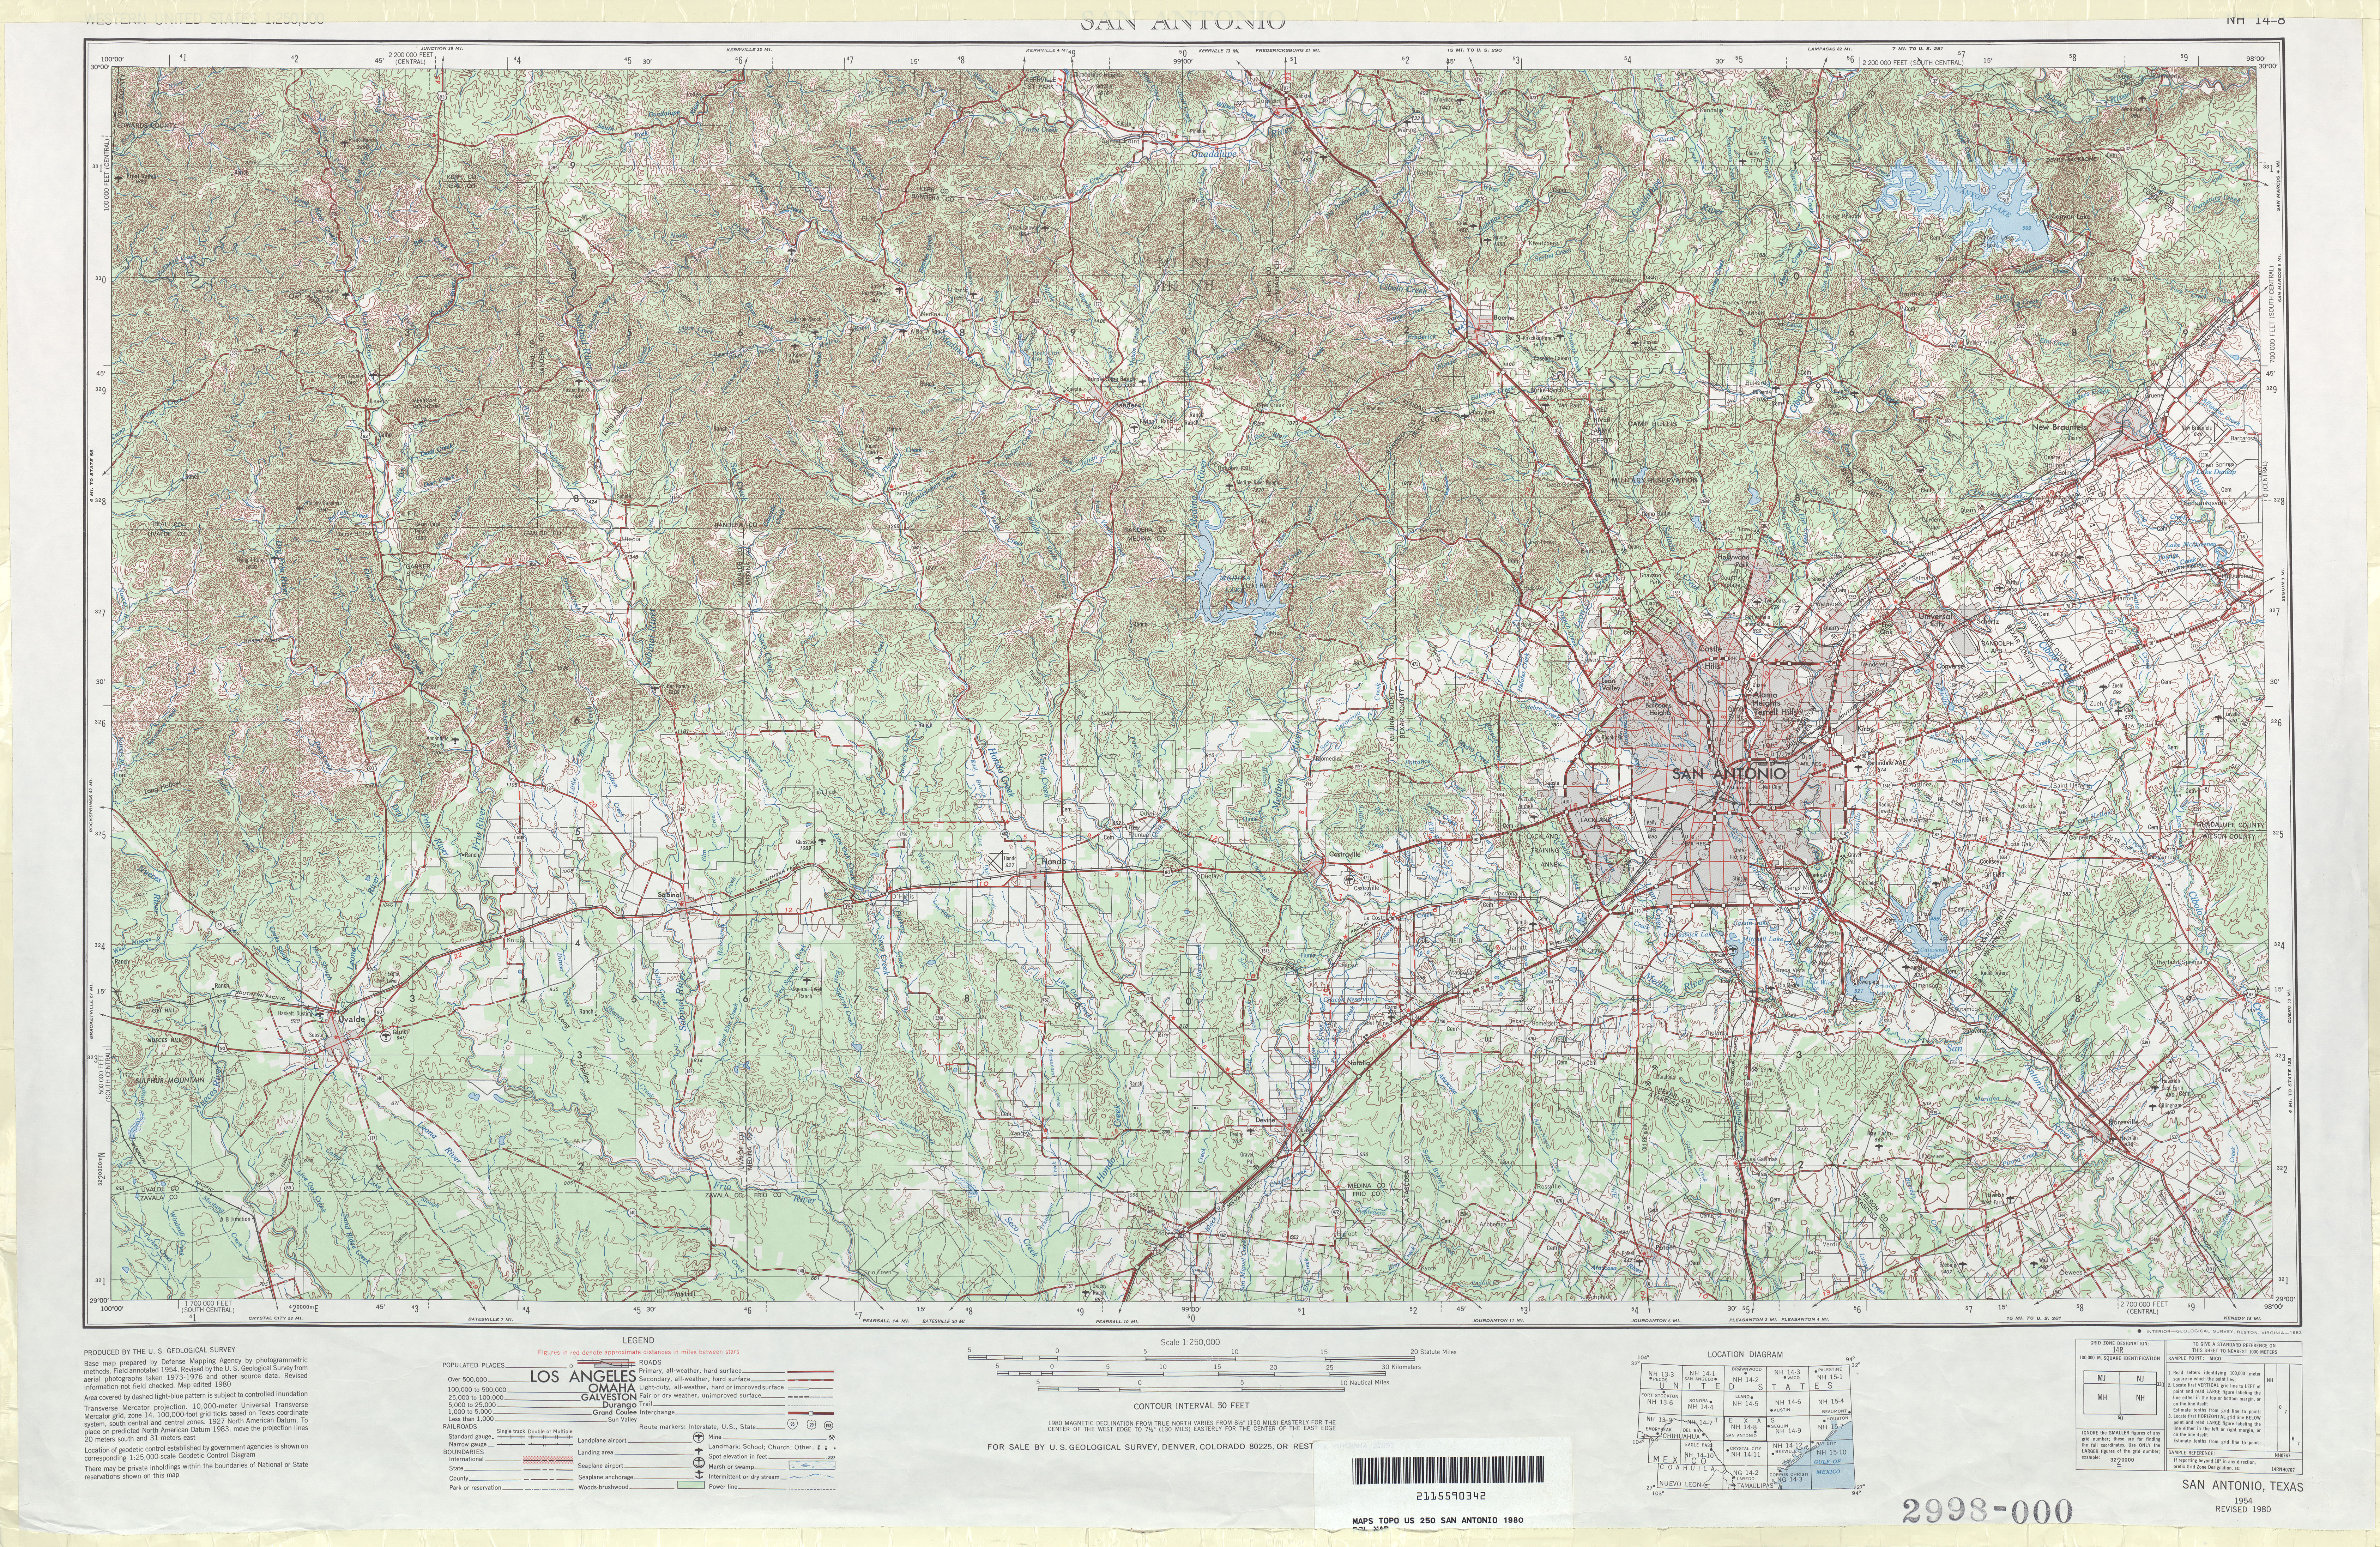 Hoja San Antonio del Mapa Topográfico de los Estados Unidos 1980